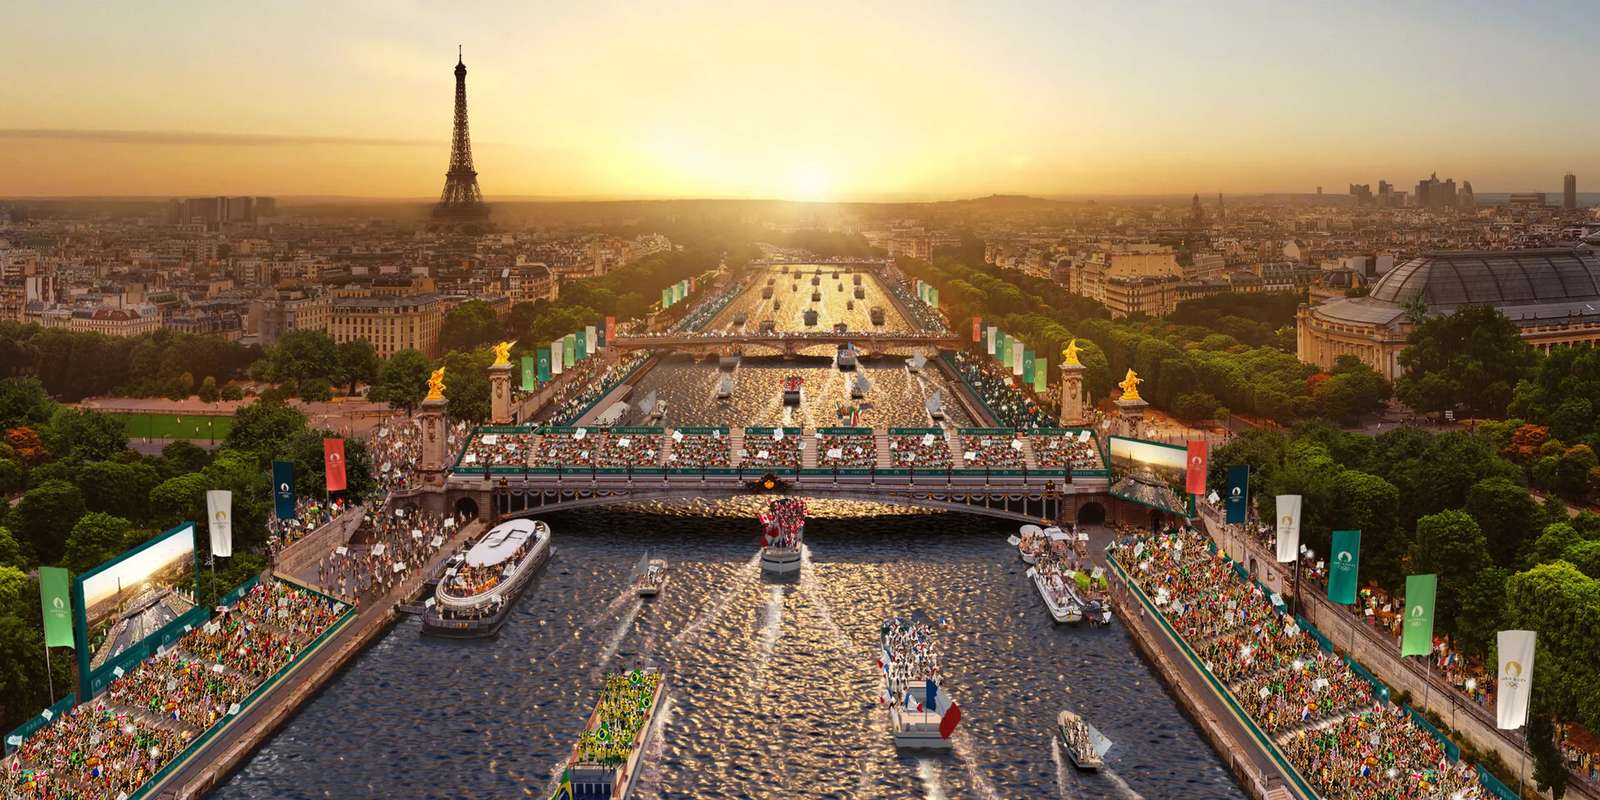 Paris 2024 puzzle online a partir de fotografia